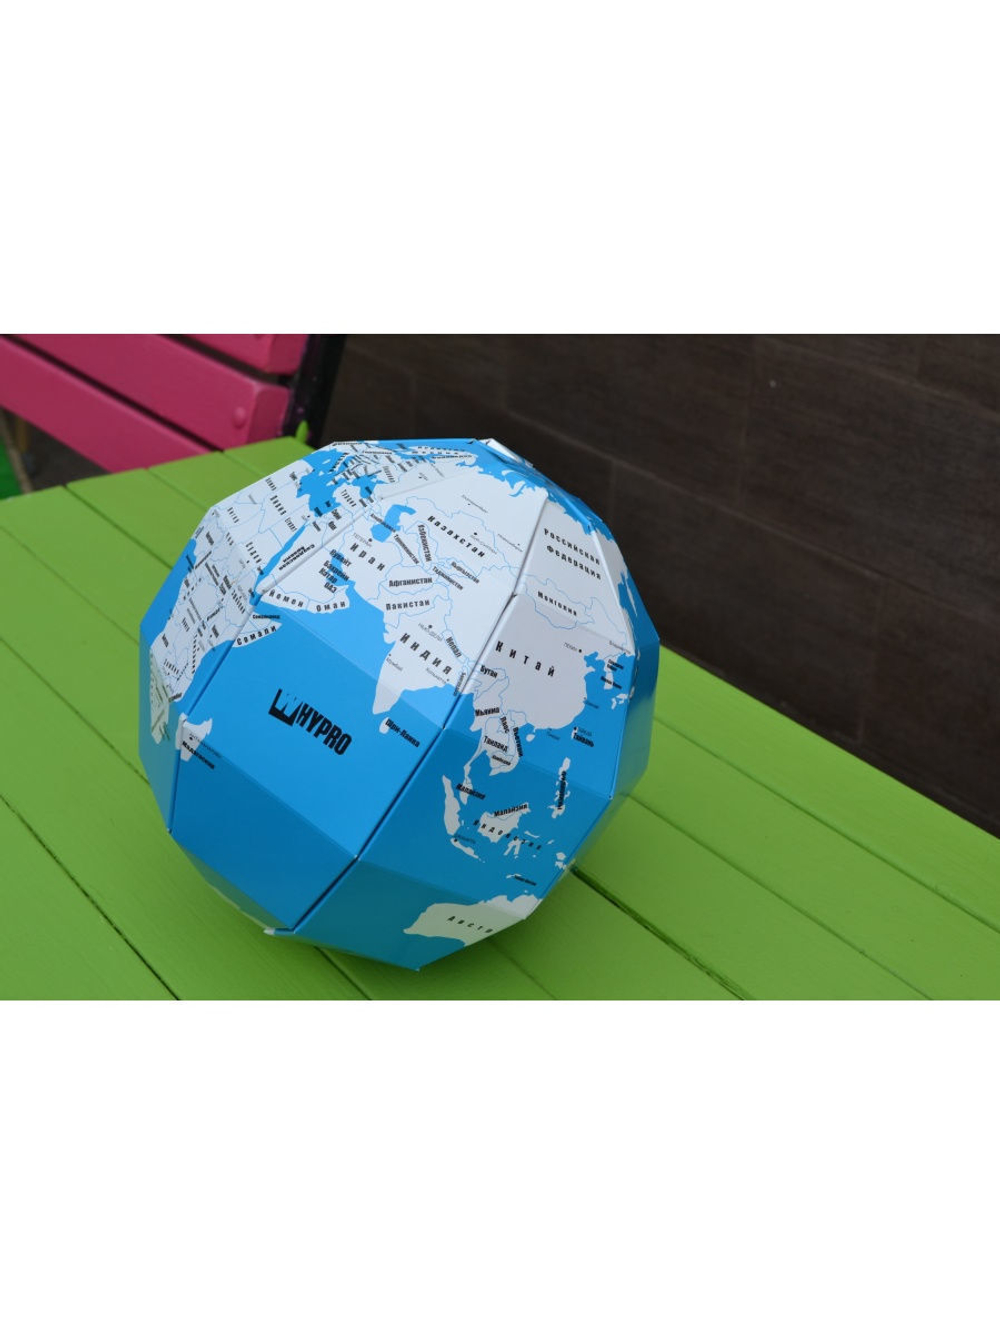 Развивающая игрушка, Учебный материал и пособие для обучения Земли и Карта политическая, подарок раскраска Декор для дома, подарок